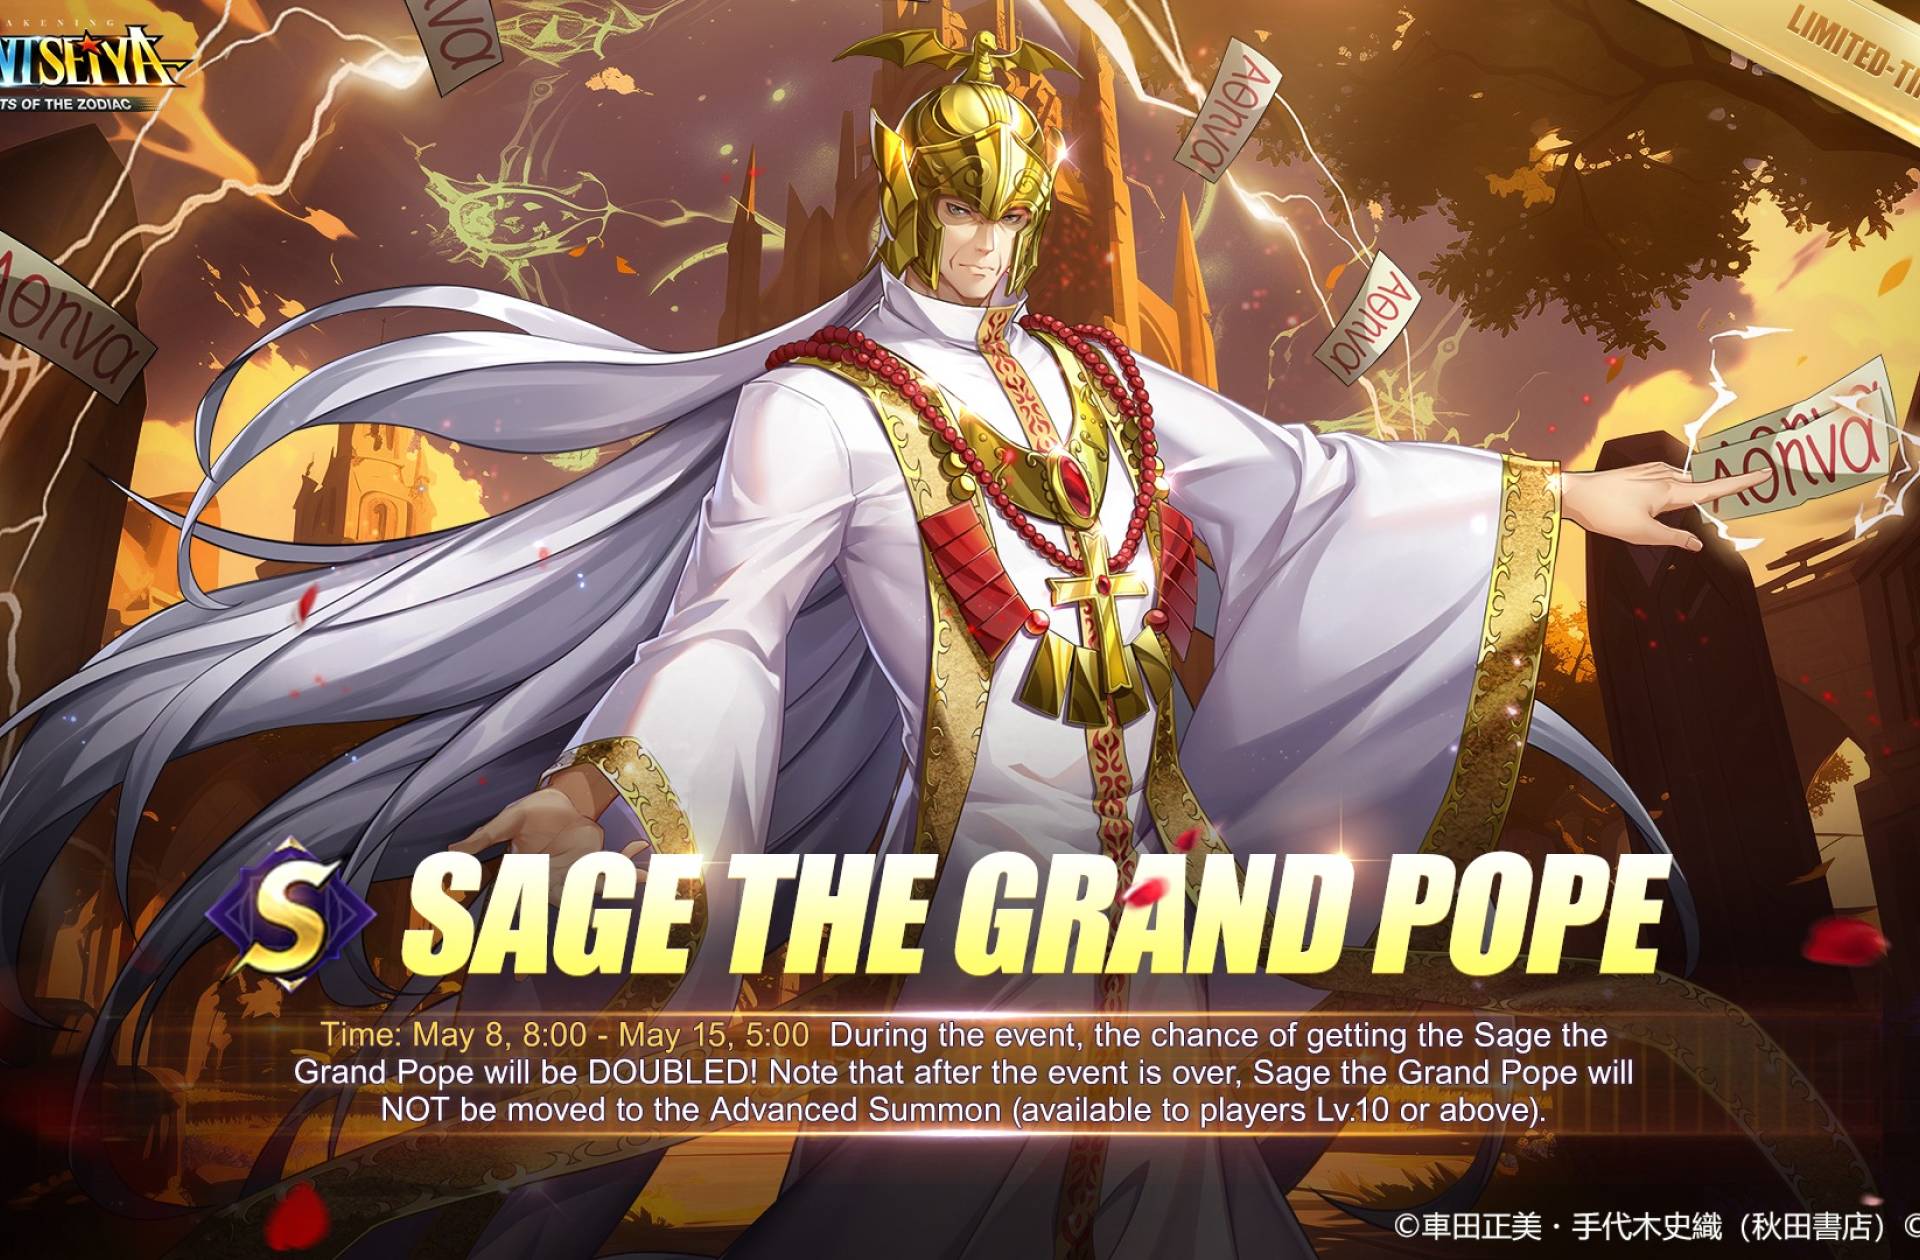 Llega el Gran Patriarca Sage a Saint Seiya Awakening KotZ | Habilidades y armado recomendado